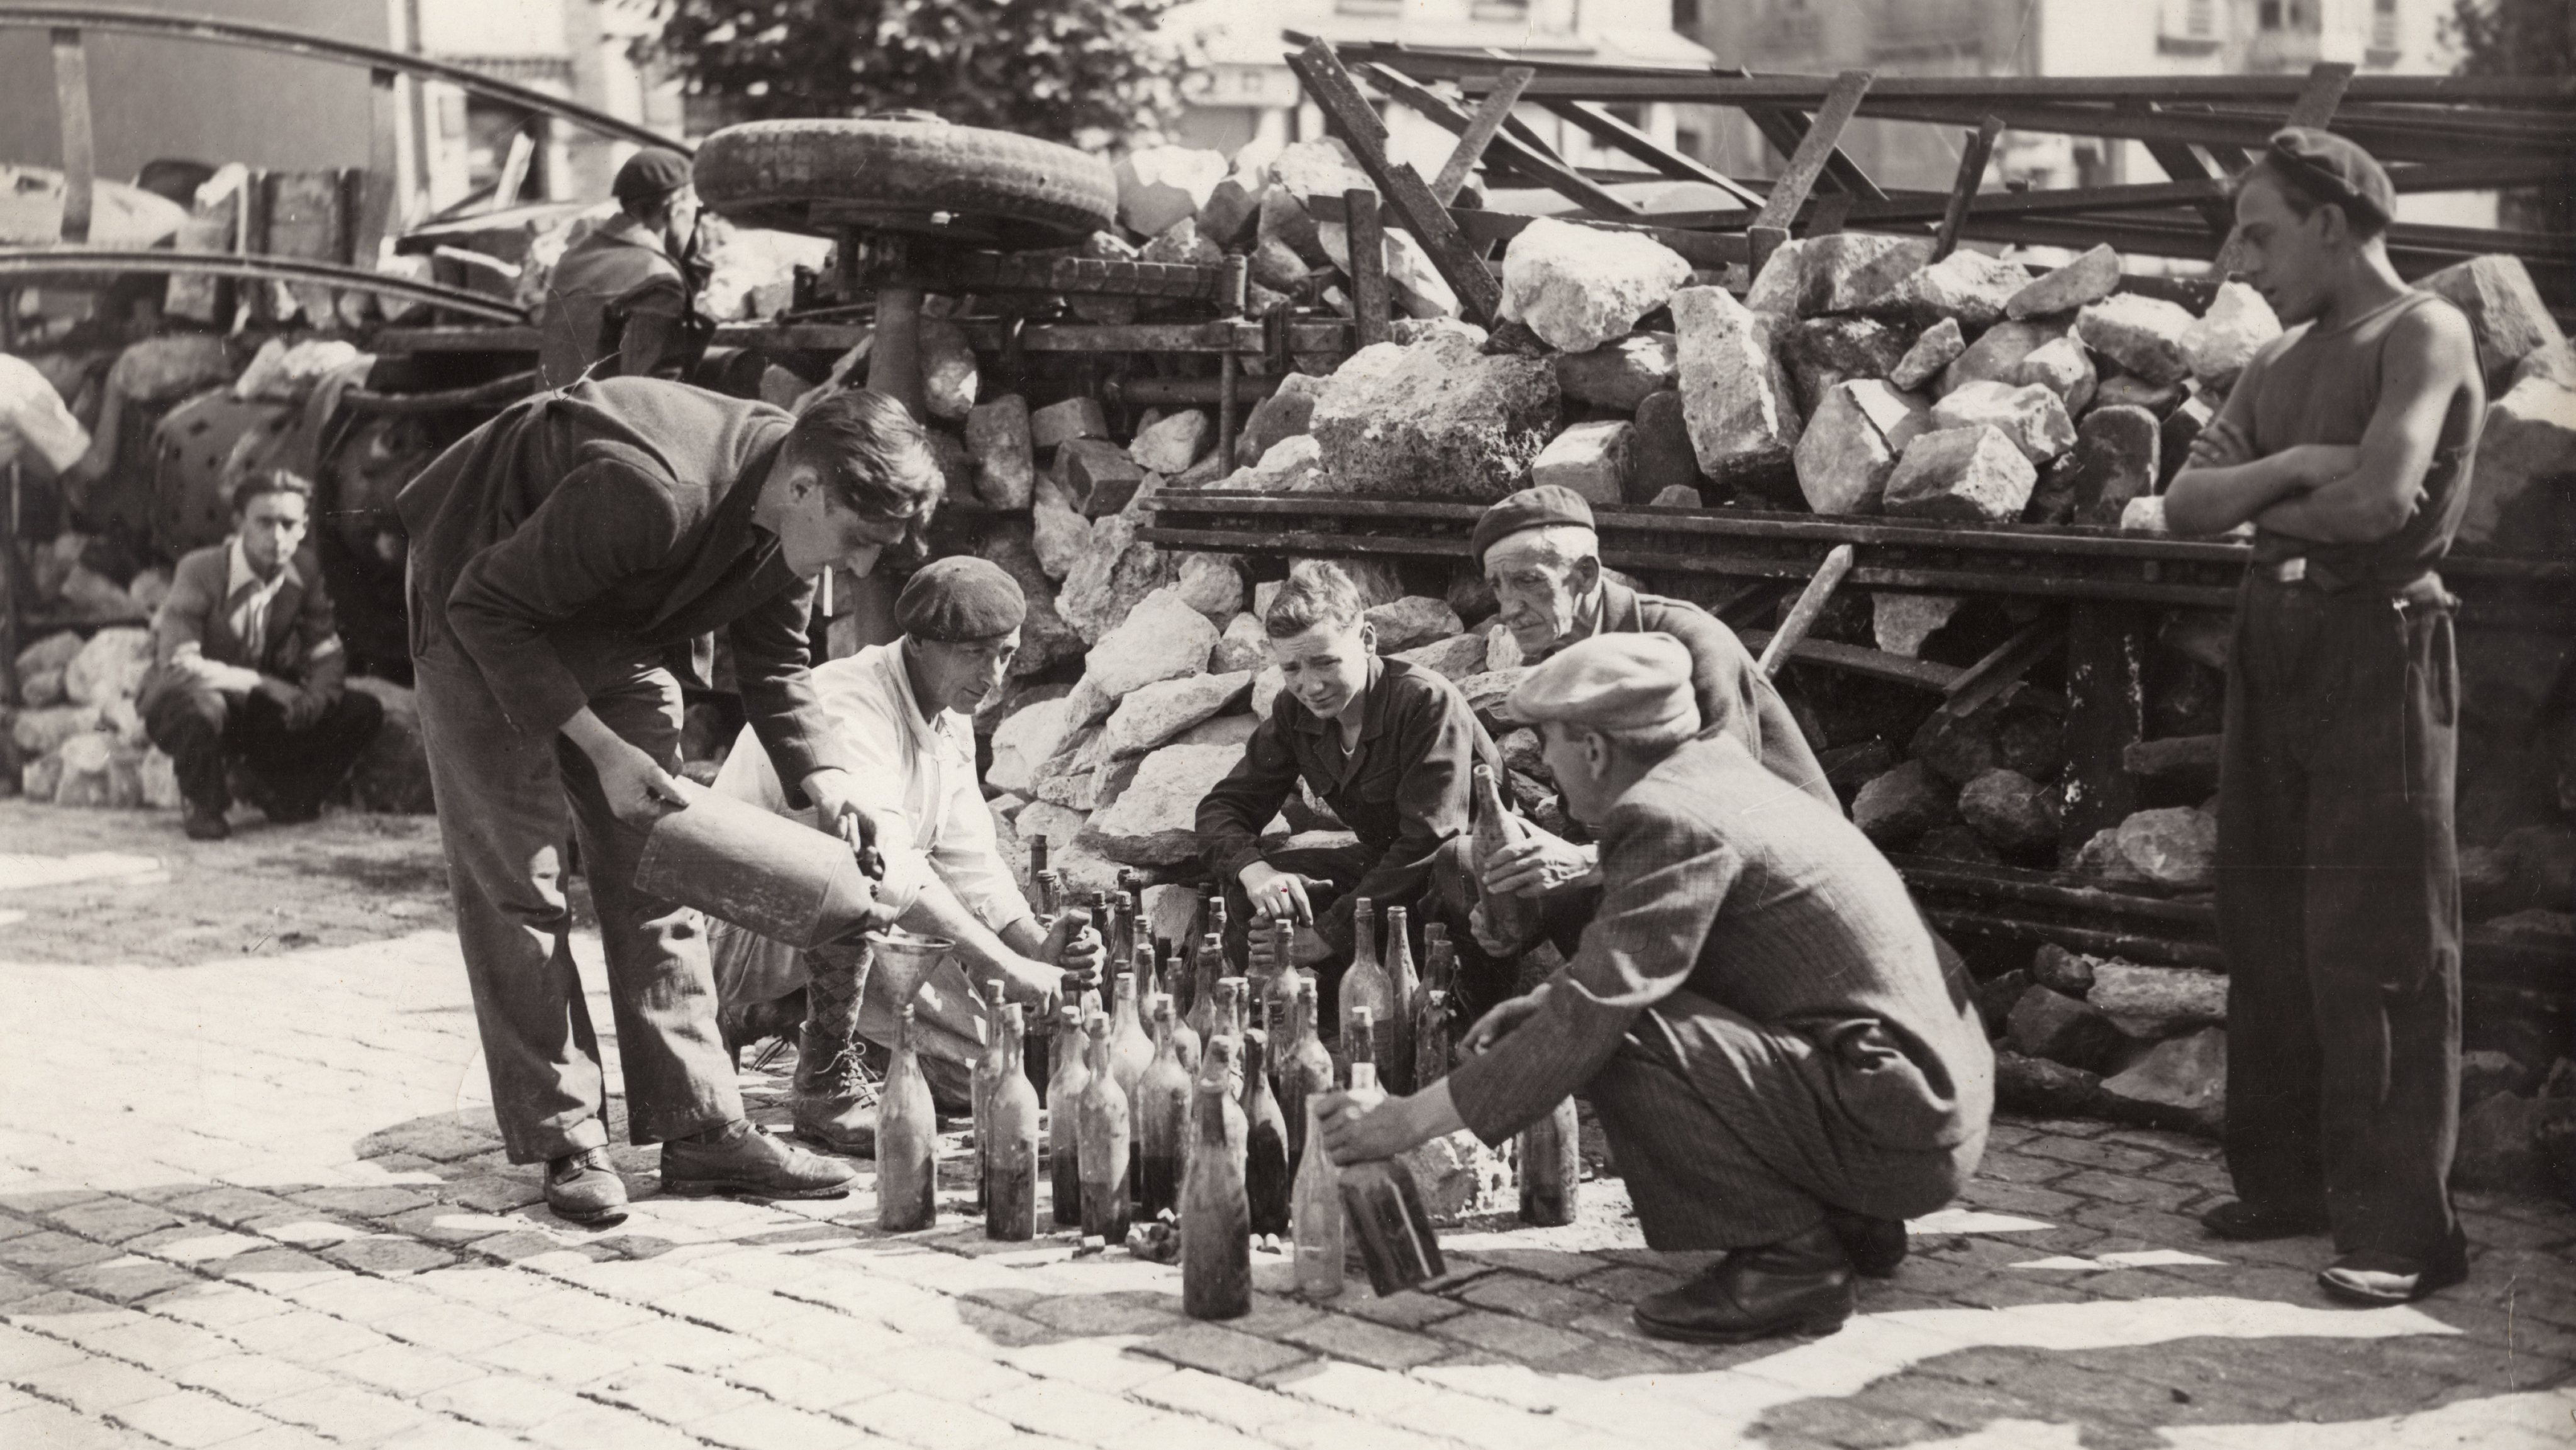 Elementos da Resistência francesa preparam cockatils Molotov em Paris, Agosto de 1944